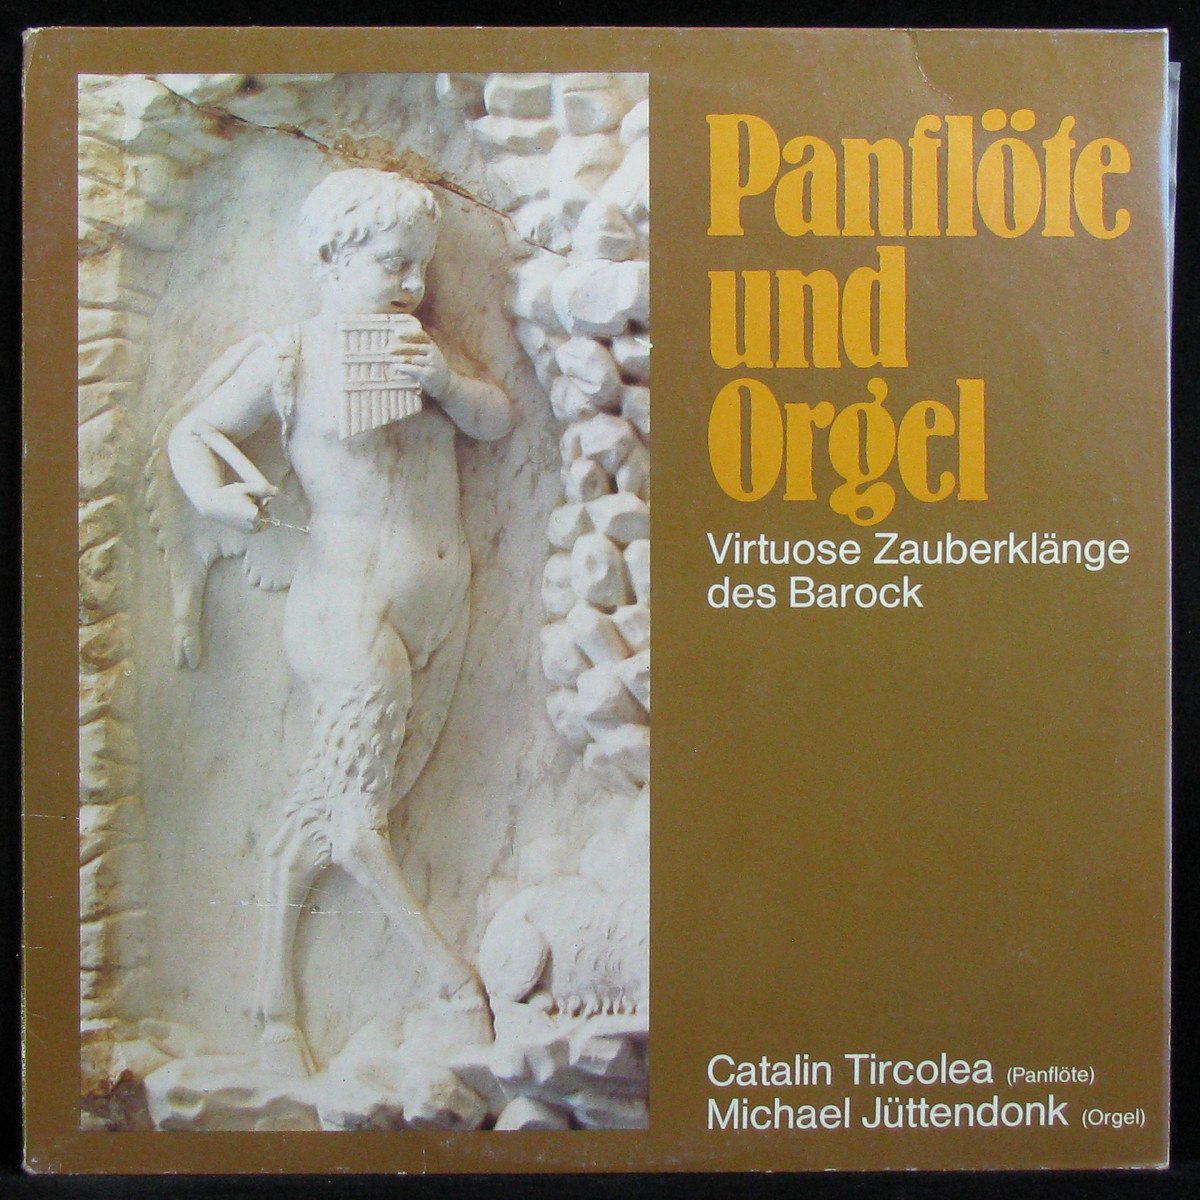 Panflote Und Orgel (Virtuose Zauberklange Des Barock)